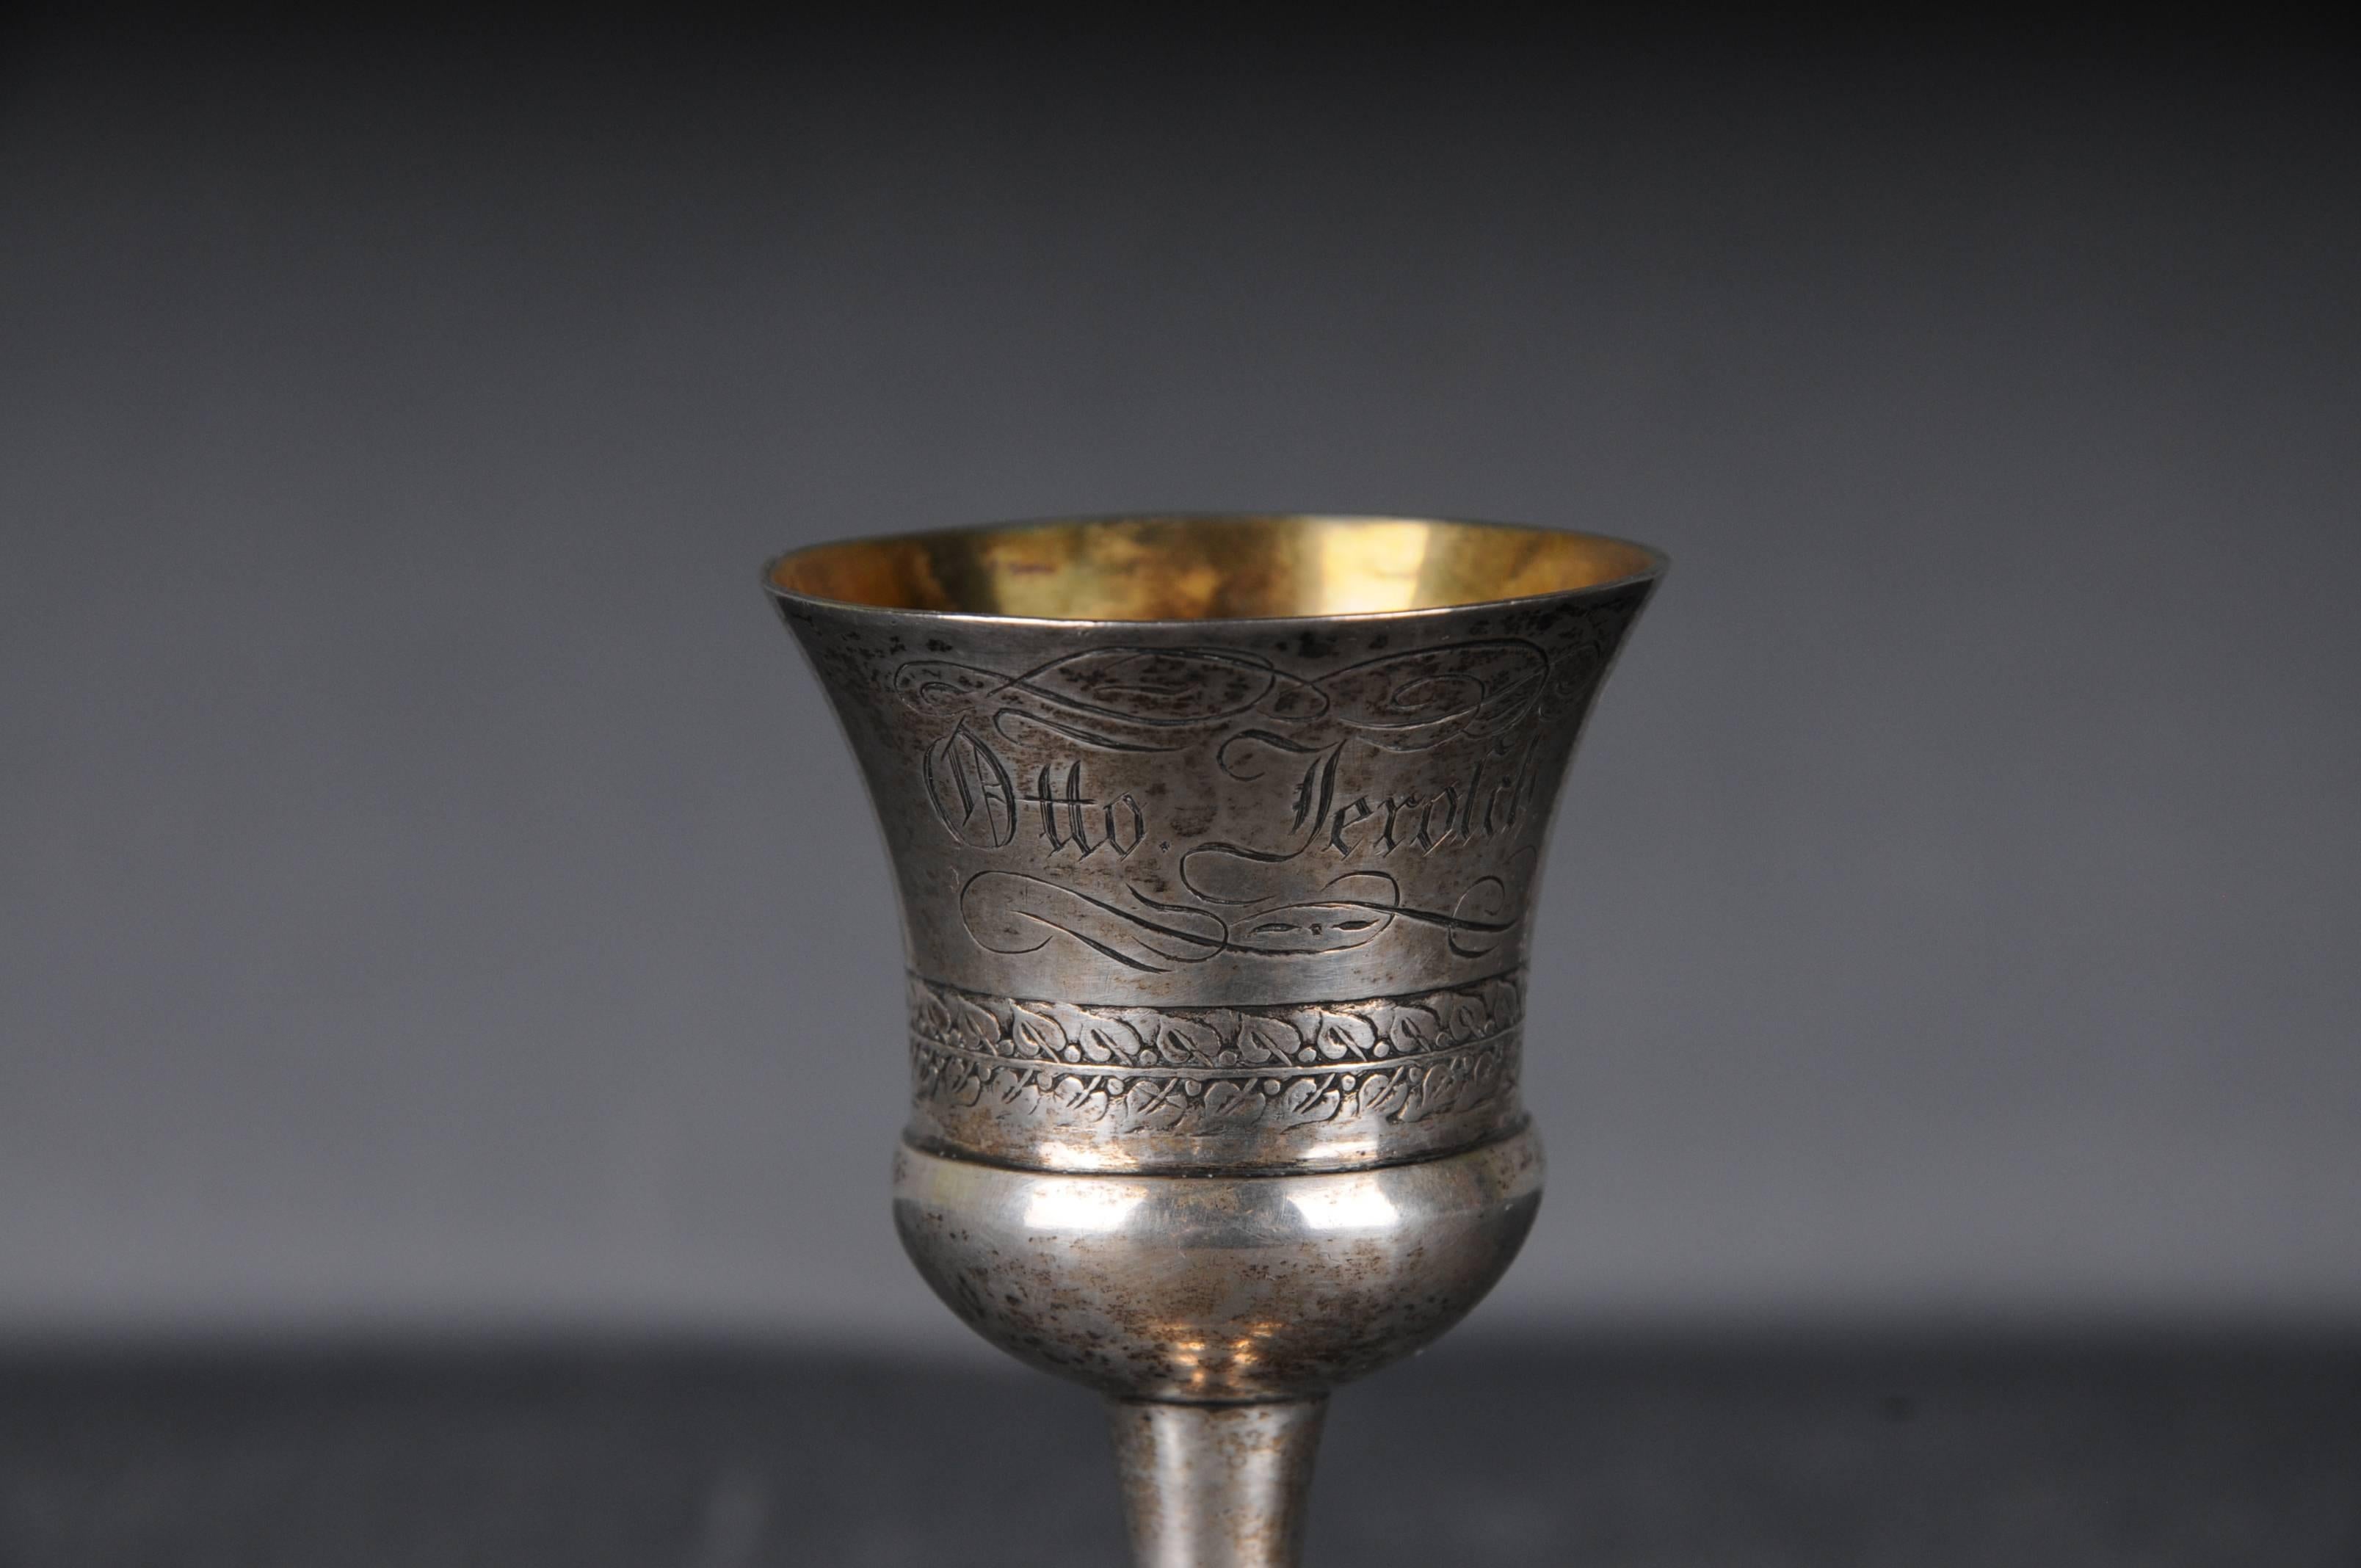 Antik Silber Kelch Cup Miniatur

mit Gravur
Innen vergoldet

Deutschland - Wahrscheinlich von München aus

Gewicht: 37 Gramm

Der Zustand ist auf den Bildern zu sehen.